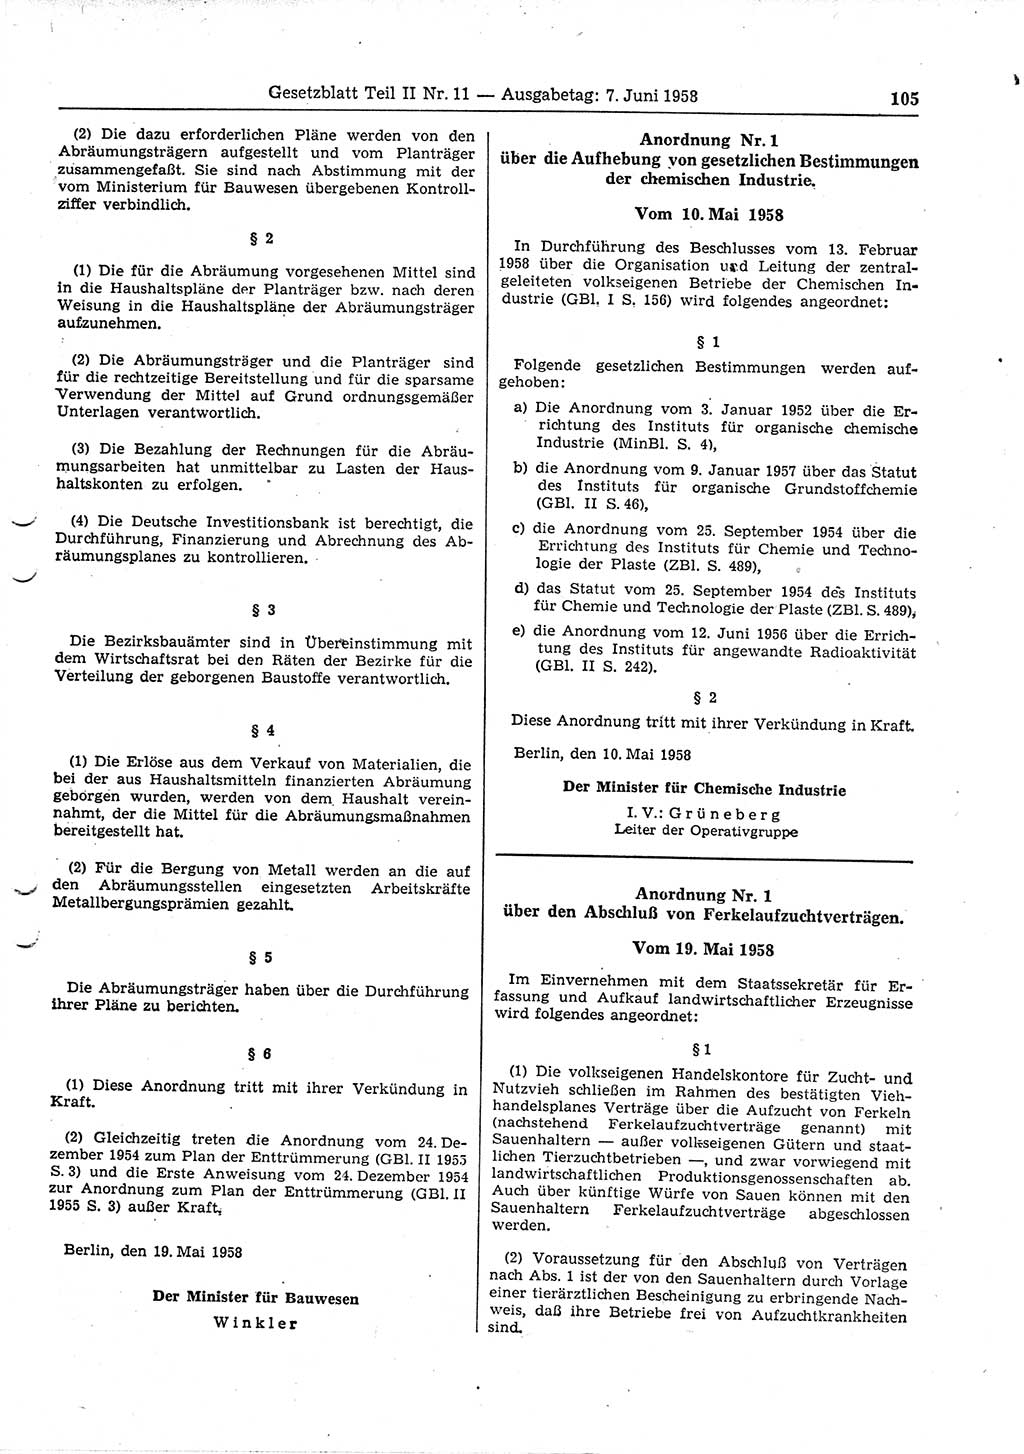 Gesetzblatt (GBl.) der Deutschen Demokratischen Republik (DDR) Teil ⅠⅠ 1958, Seite 105 (GBl. DDR ⅠⅠ 1958, S. 105)